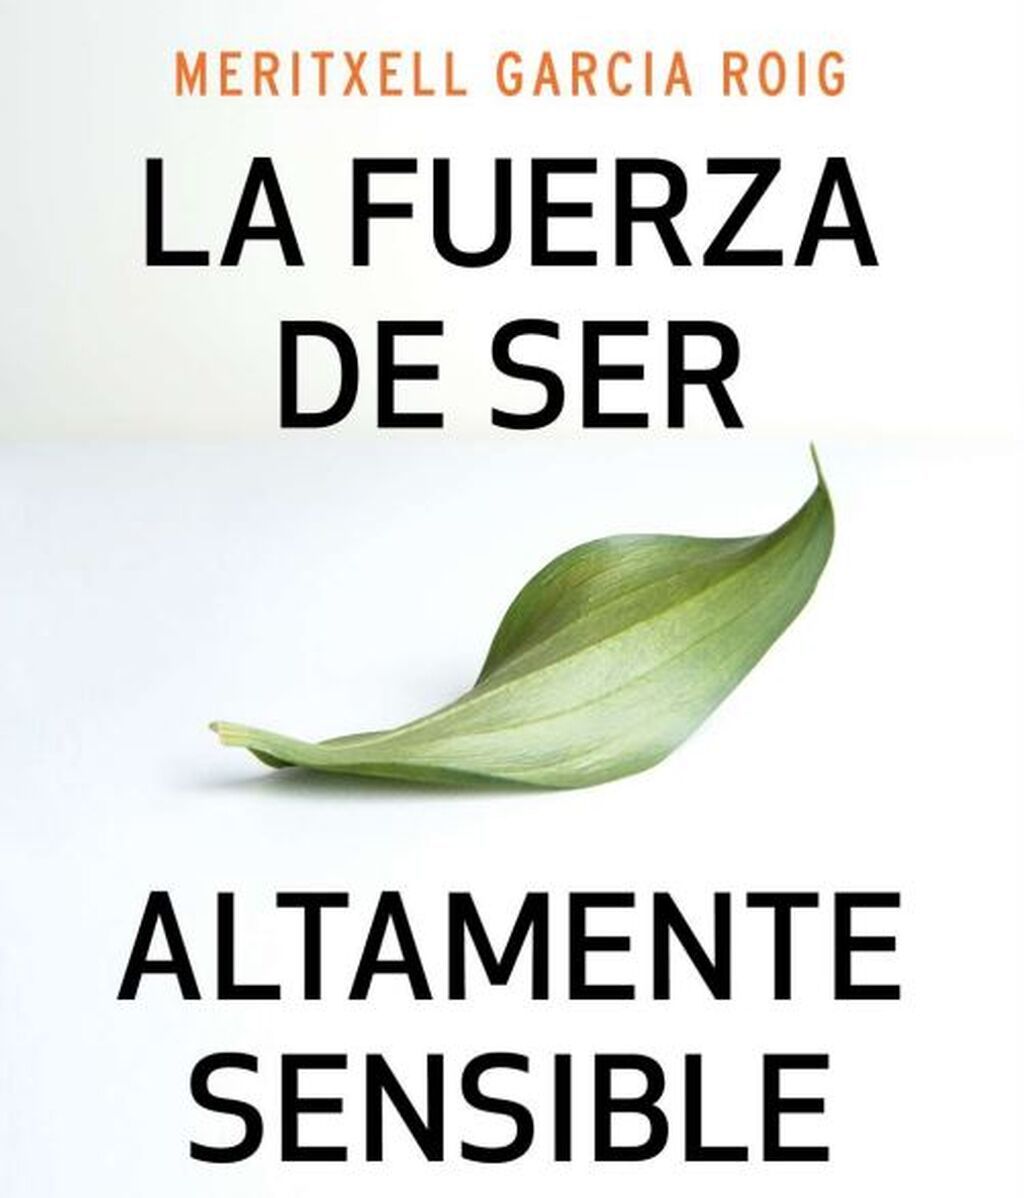 'La fuerza de ser altamente sensible', de Meritxell García Roig